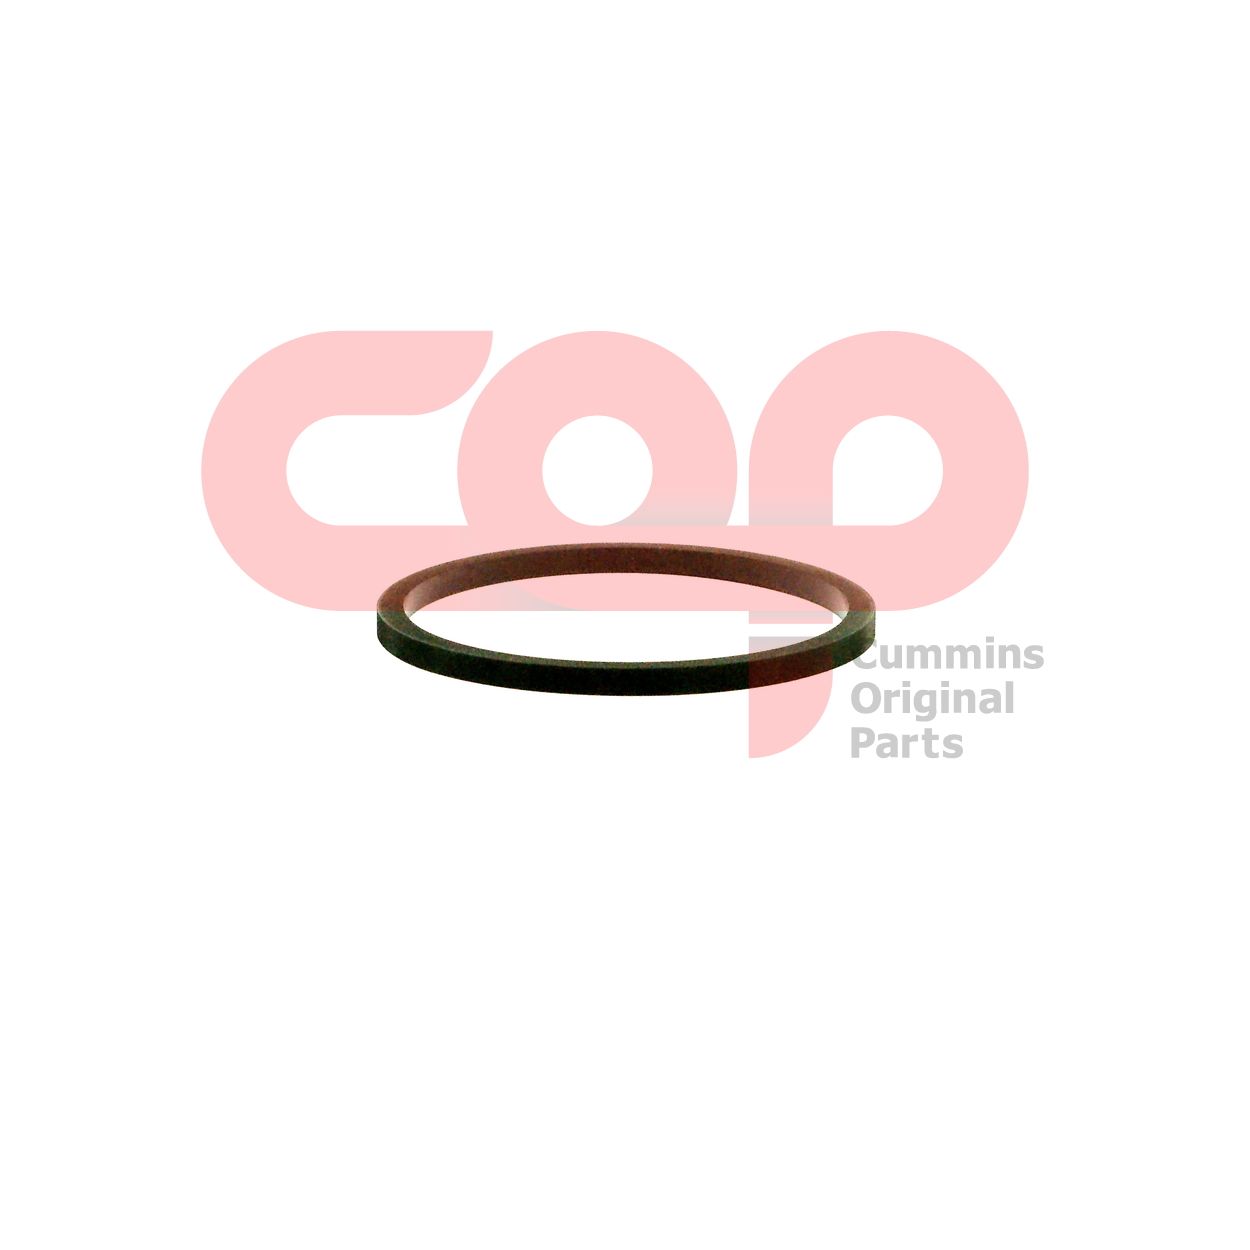 Кольцо уплотнительное головки масляного фильтра Cummins N Series 3018695